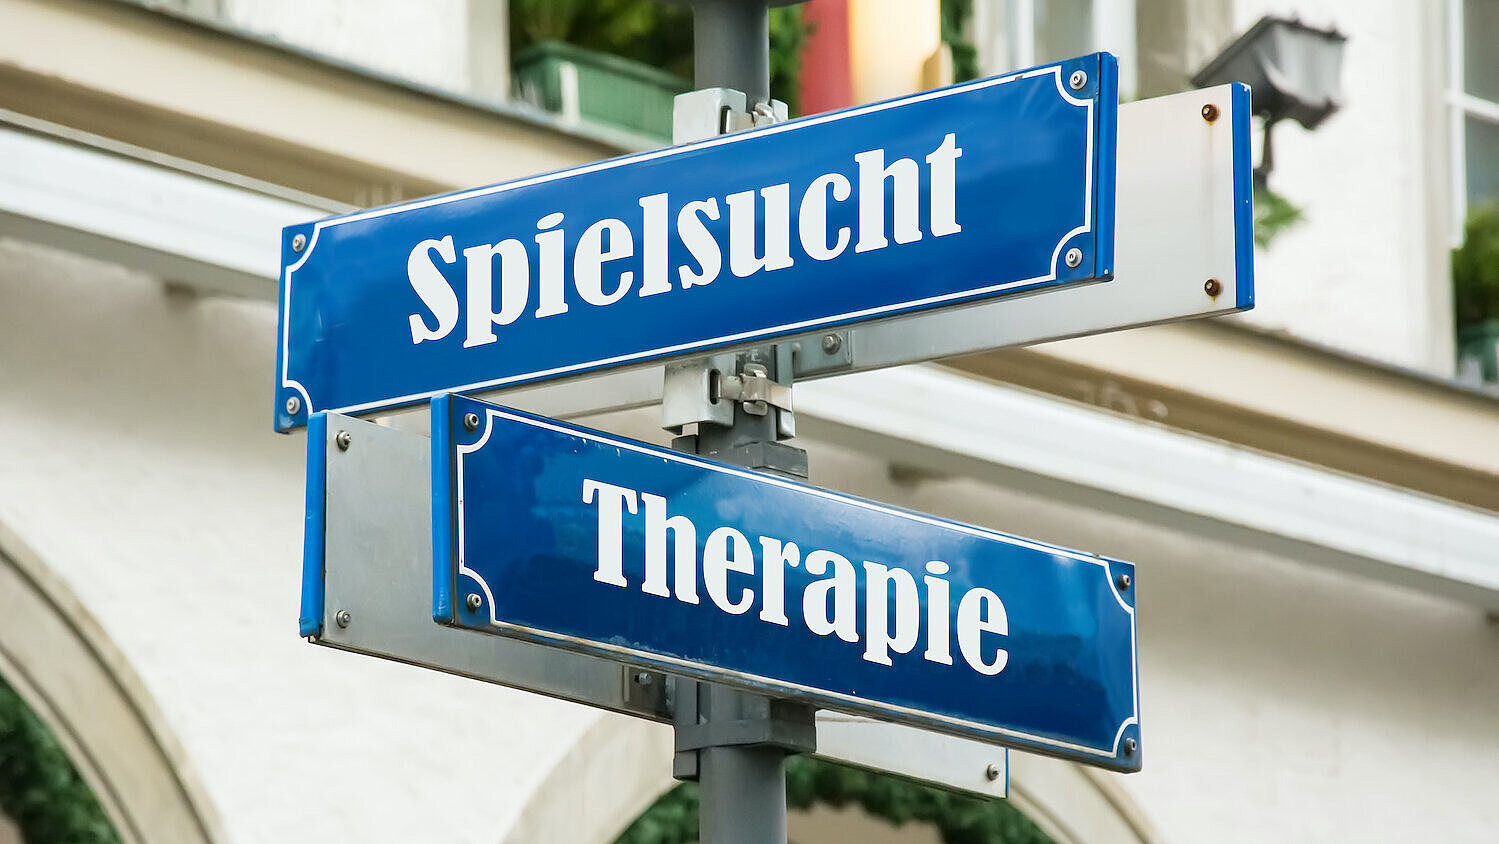 Blaue Straßenschilder mit den Bezeichnungen "Spielsucht" und "Therapie"